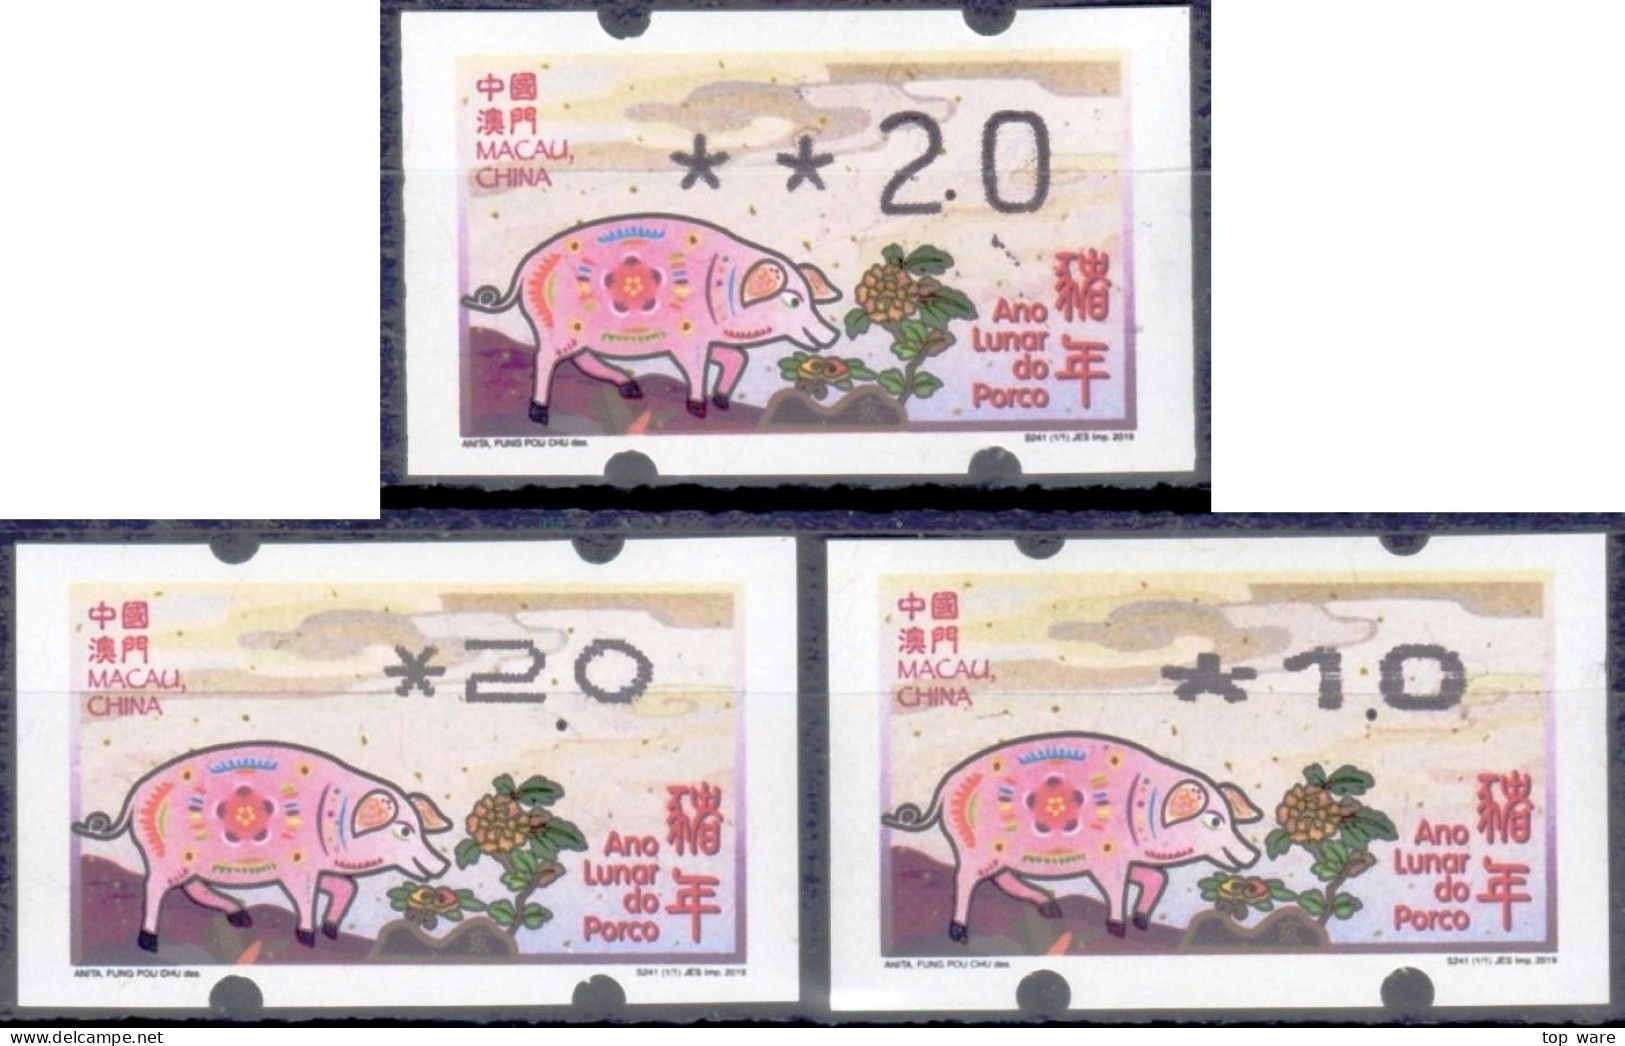 2019 Chine Macau ATM Stamps Année Du Cochon Pig / Tous Types D'imprimantes Klussendorf Nagler Newvision Automatenmarken - Automatenmarken